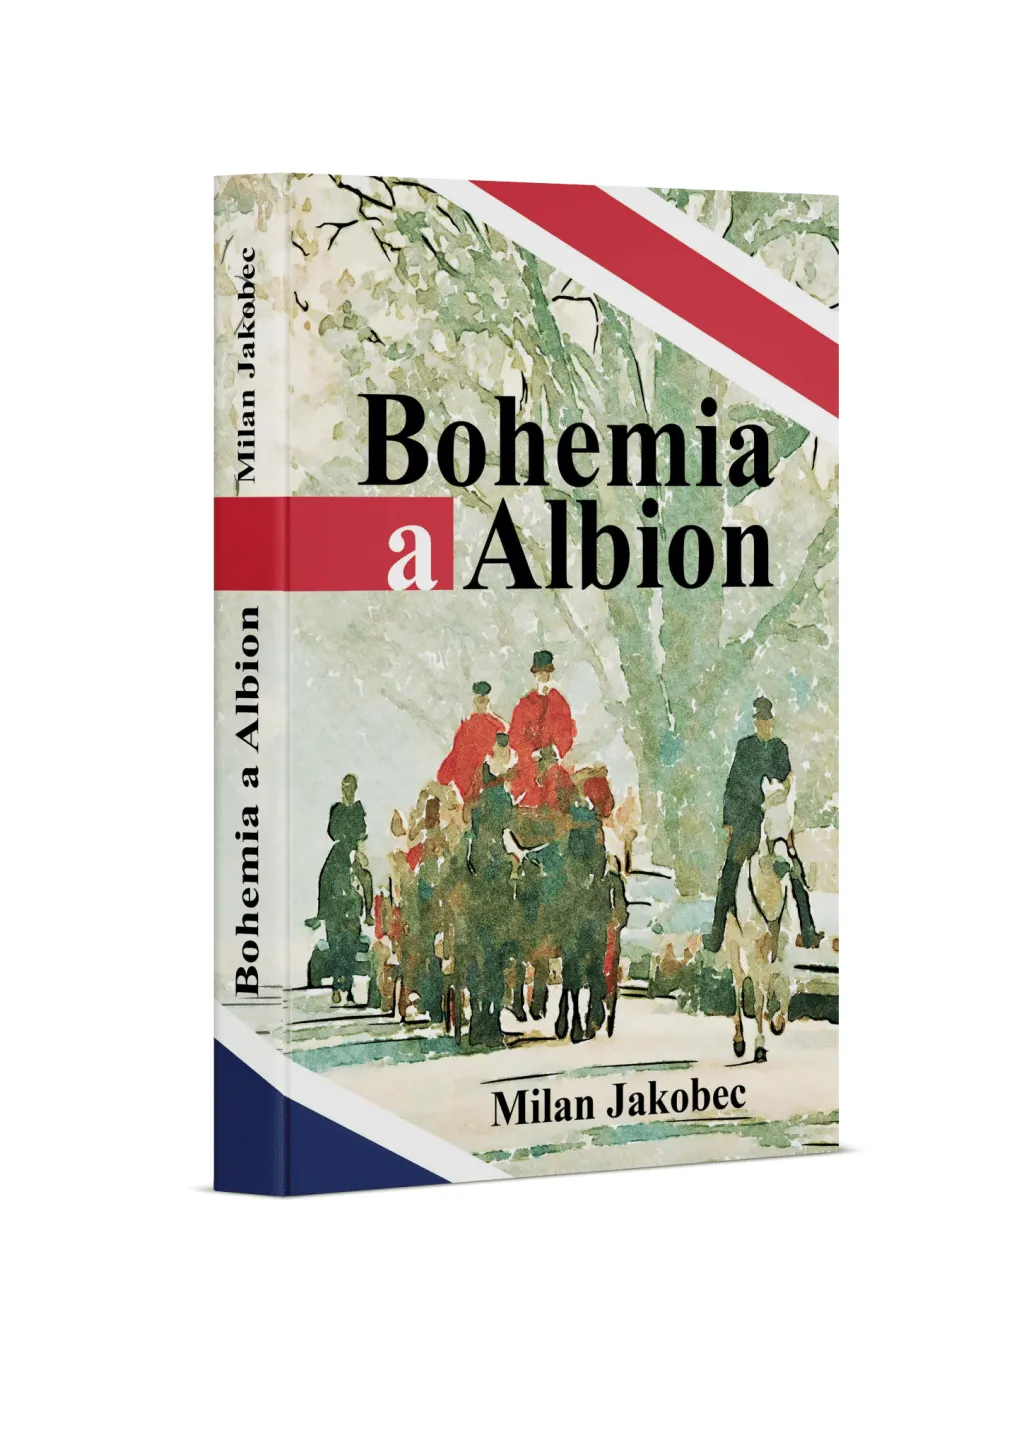 Práci v diplomatických službách přibližuje v knize Bohemia a Albion diplomat Milan Jakobec